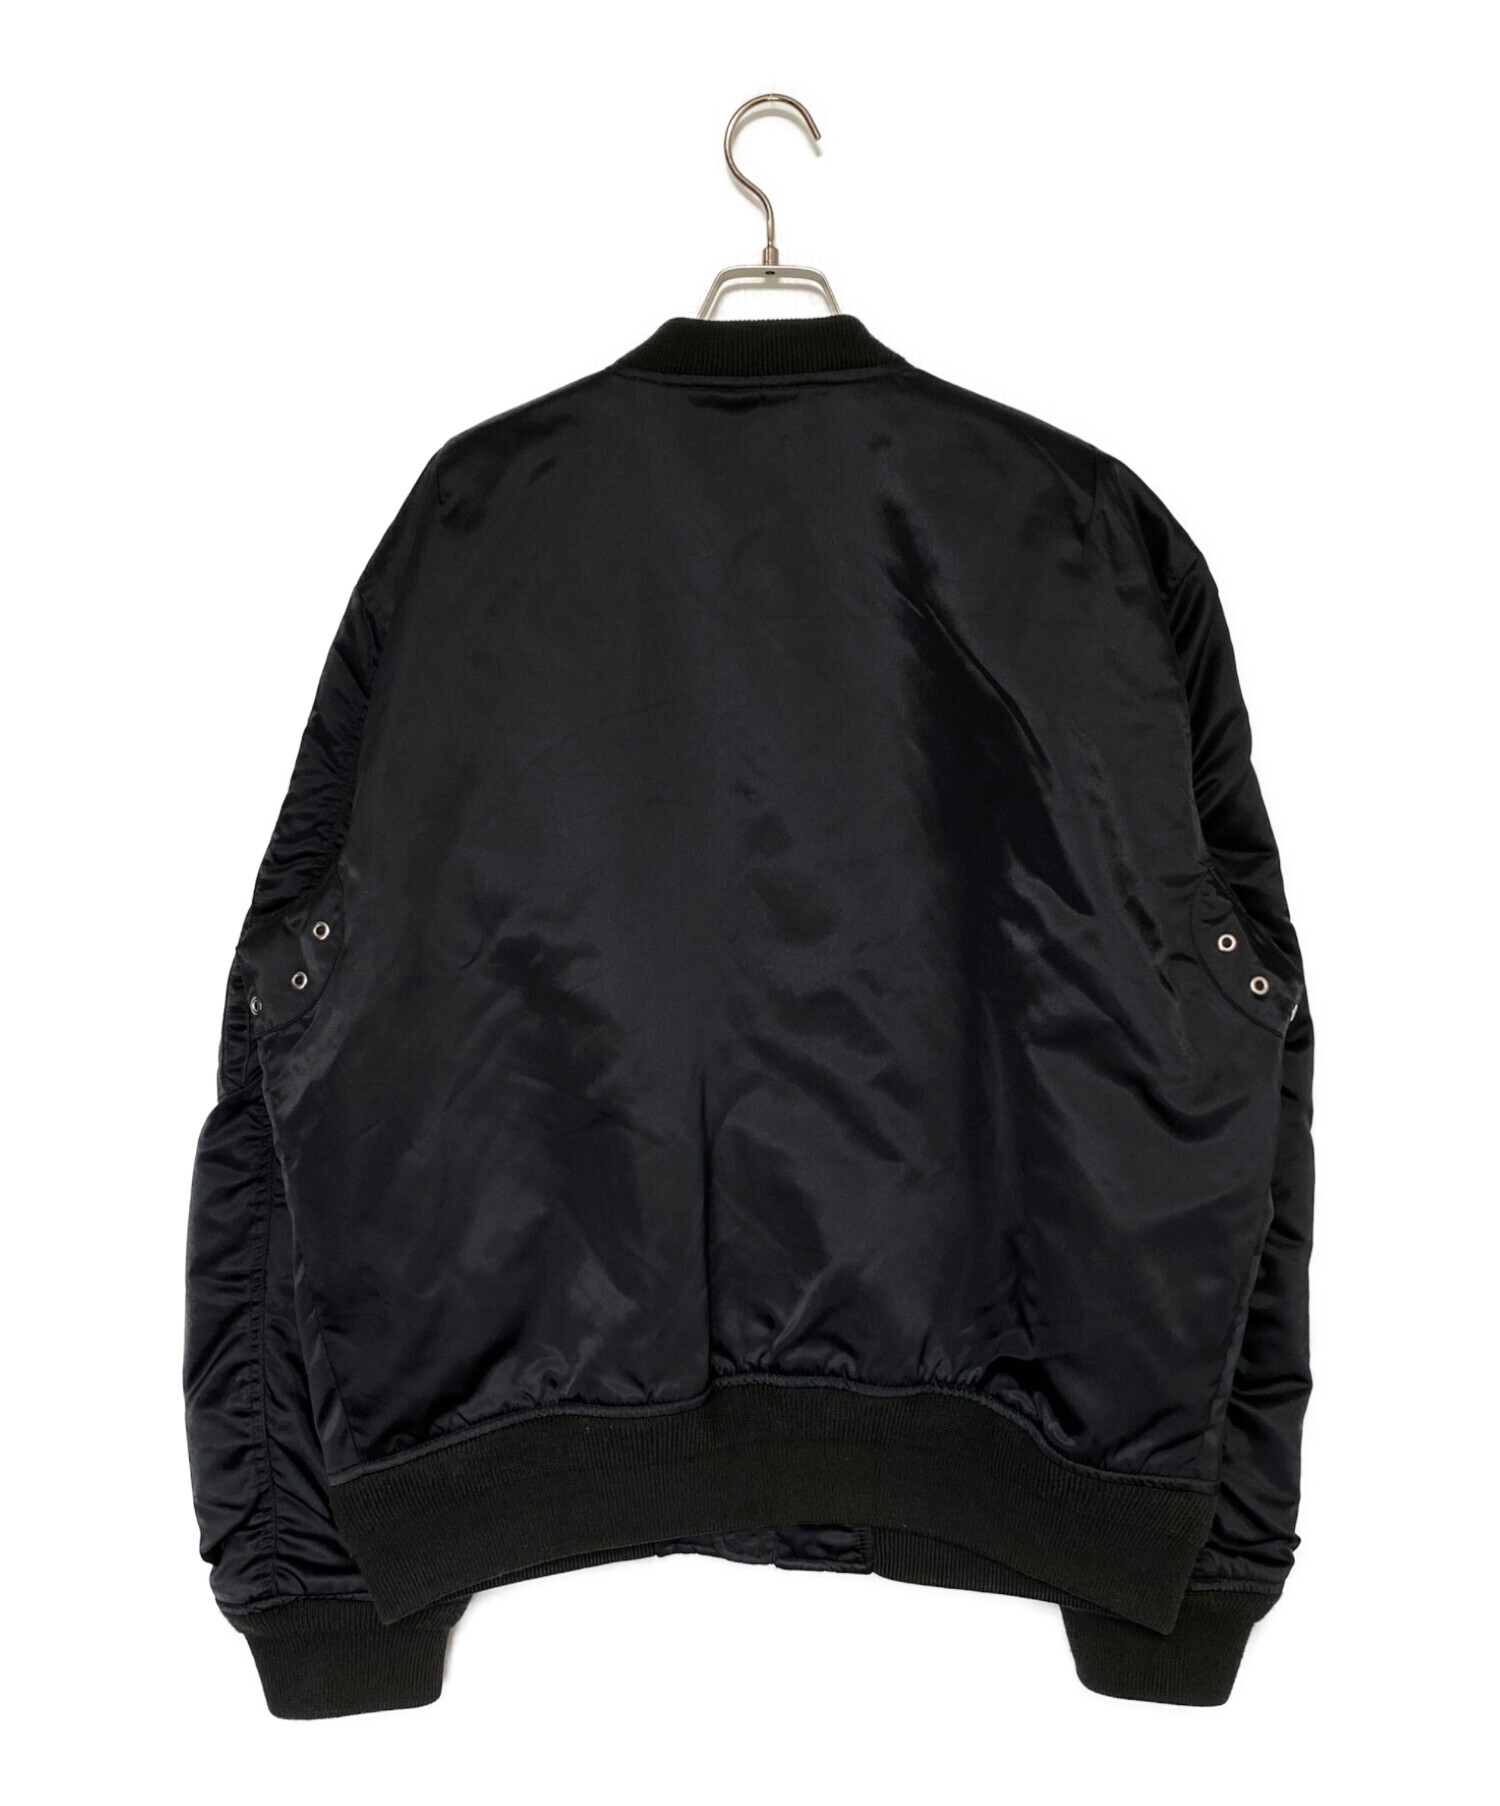 DIESEL (ディーゼル) MA-1ジャケット ブラック サイズ:XL